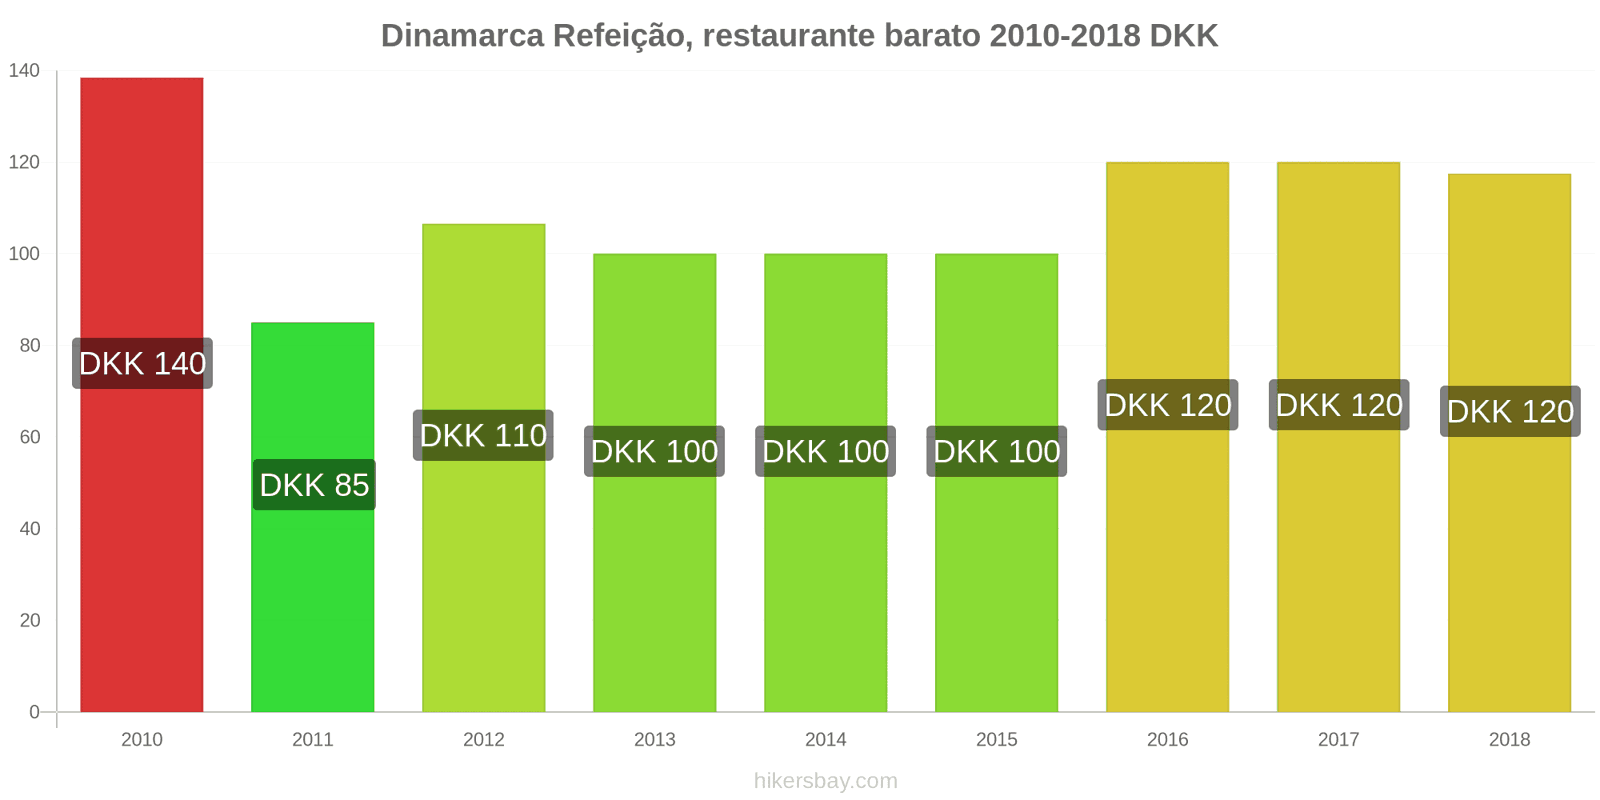 Dinamarca mudanças de preços Refeição em um restaurante econômico hikersbay.com